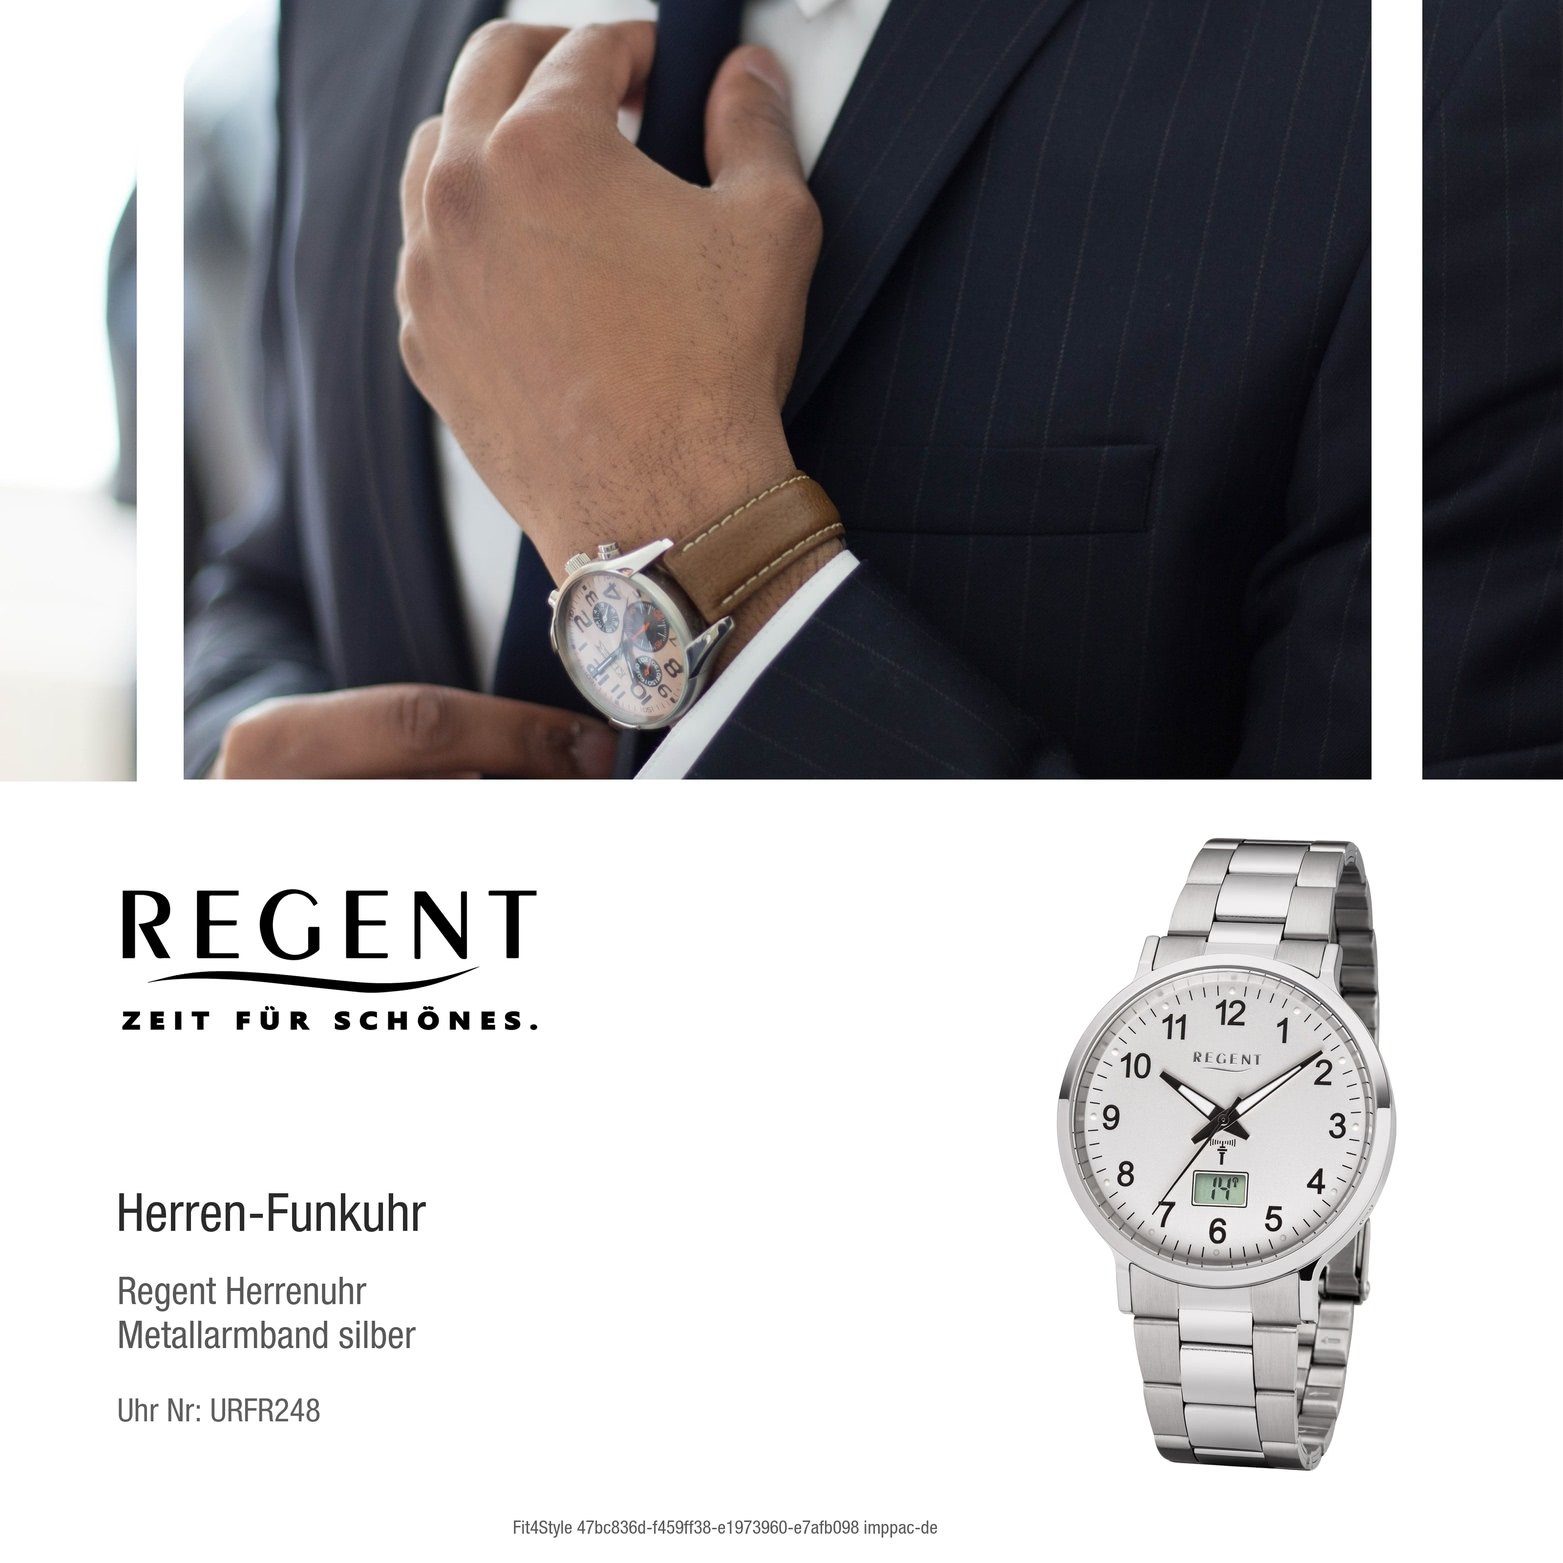 Metallarmband, Funkuhr Herren Elegant-Style Gehäuse Metall Herrenuhr Regent Regent mit 40mm), (ca. Uhr rundes FR-248,